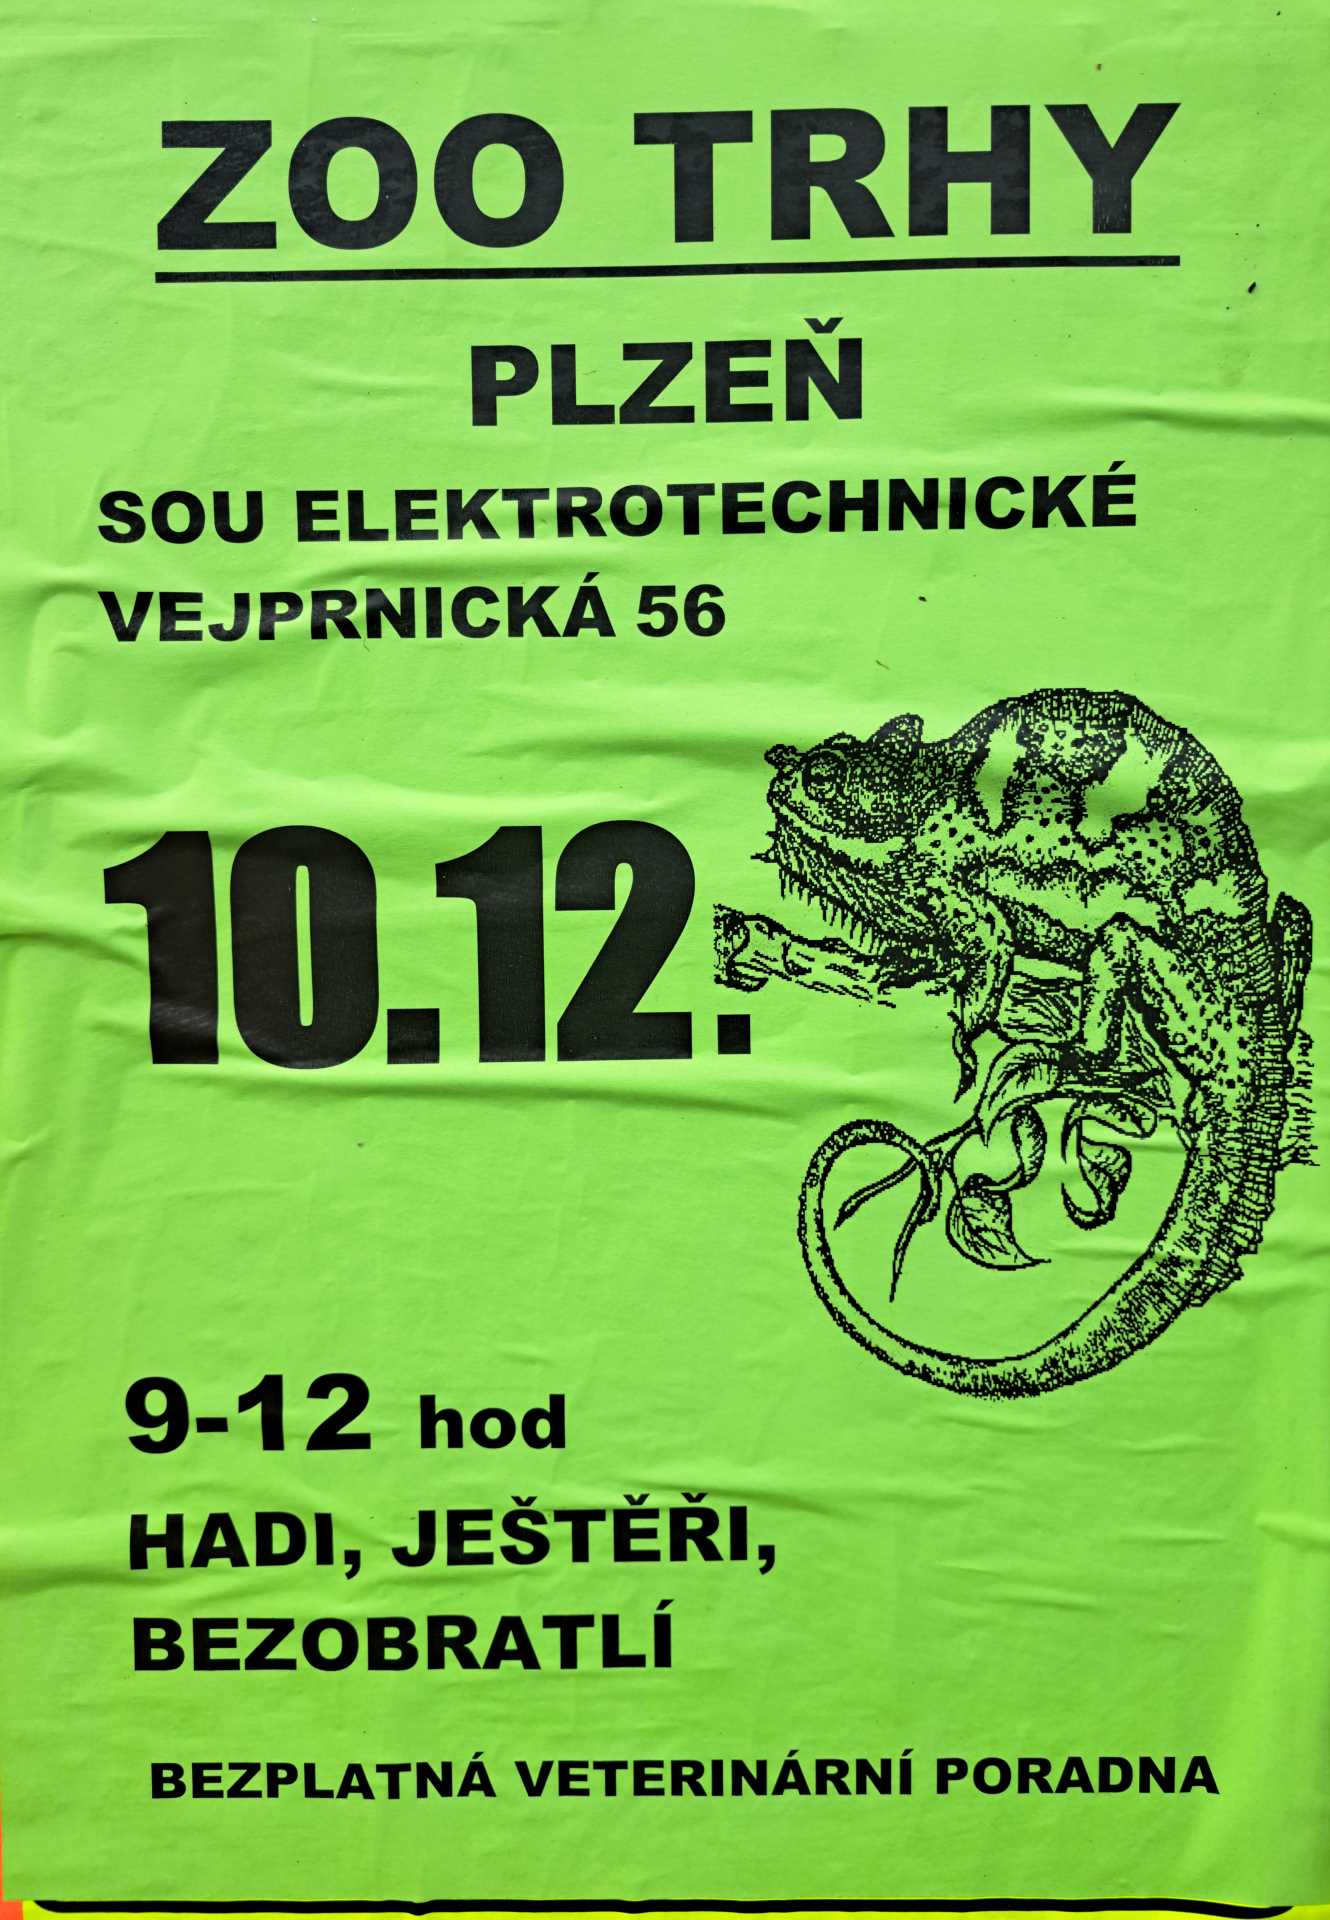 Pozvánka na zoo trhy v Plzni